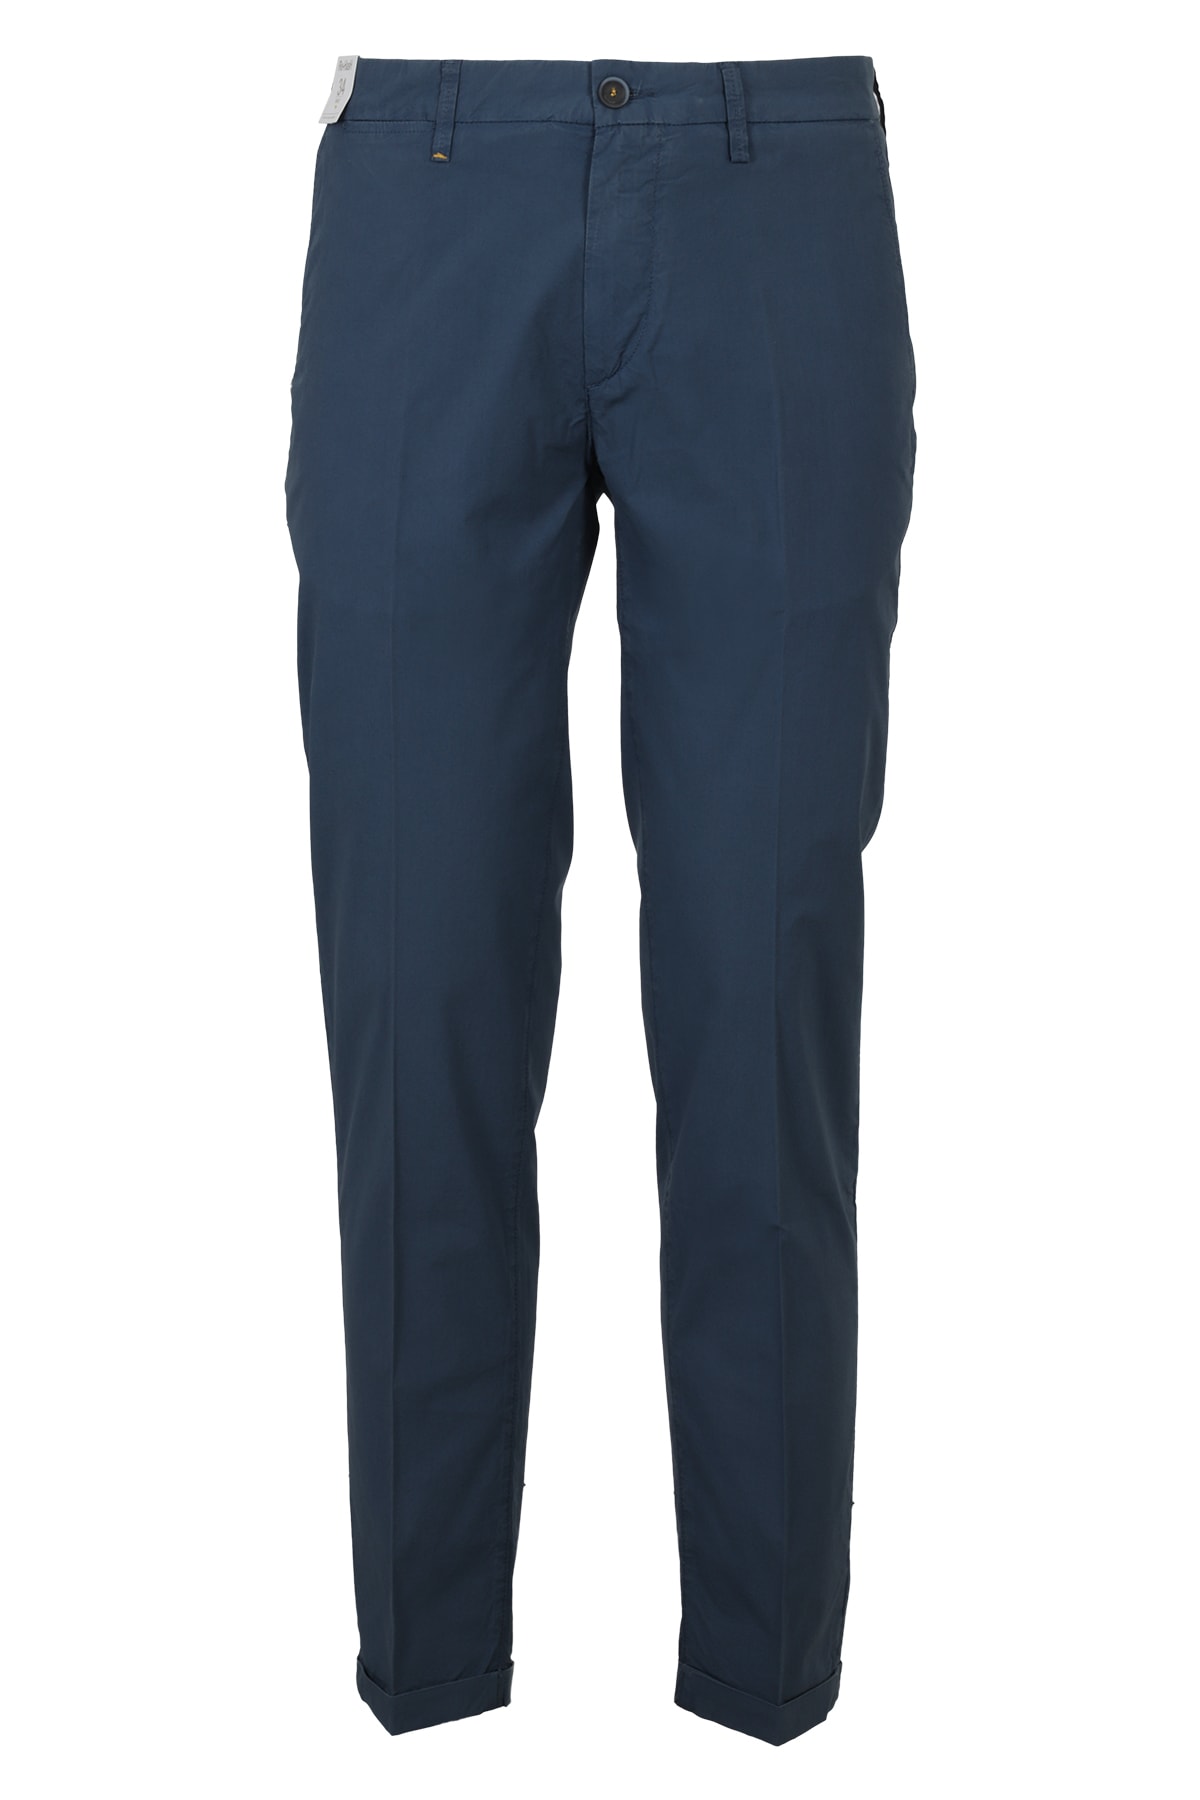 Re-hash Pants In Blu Chiaro